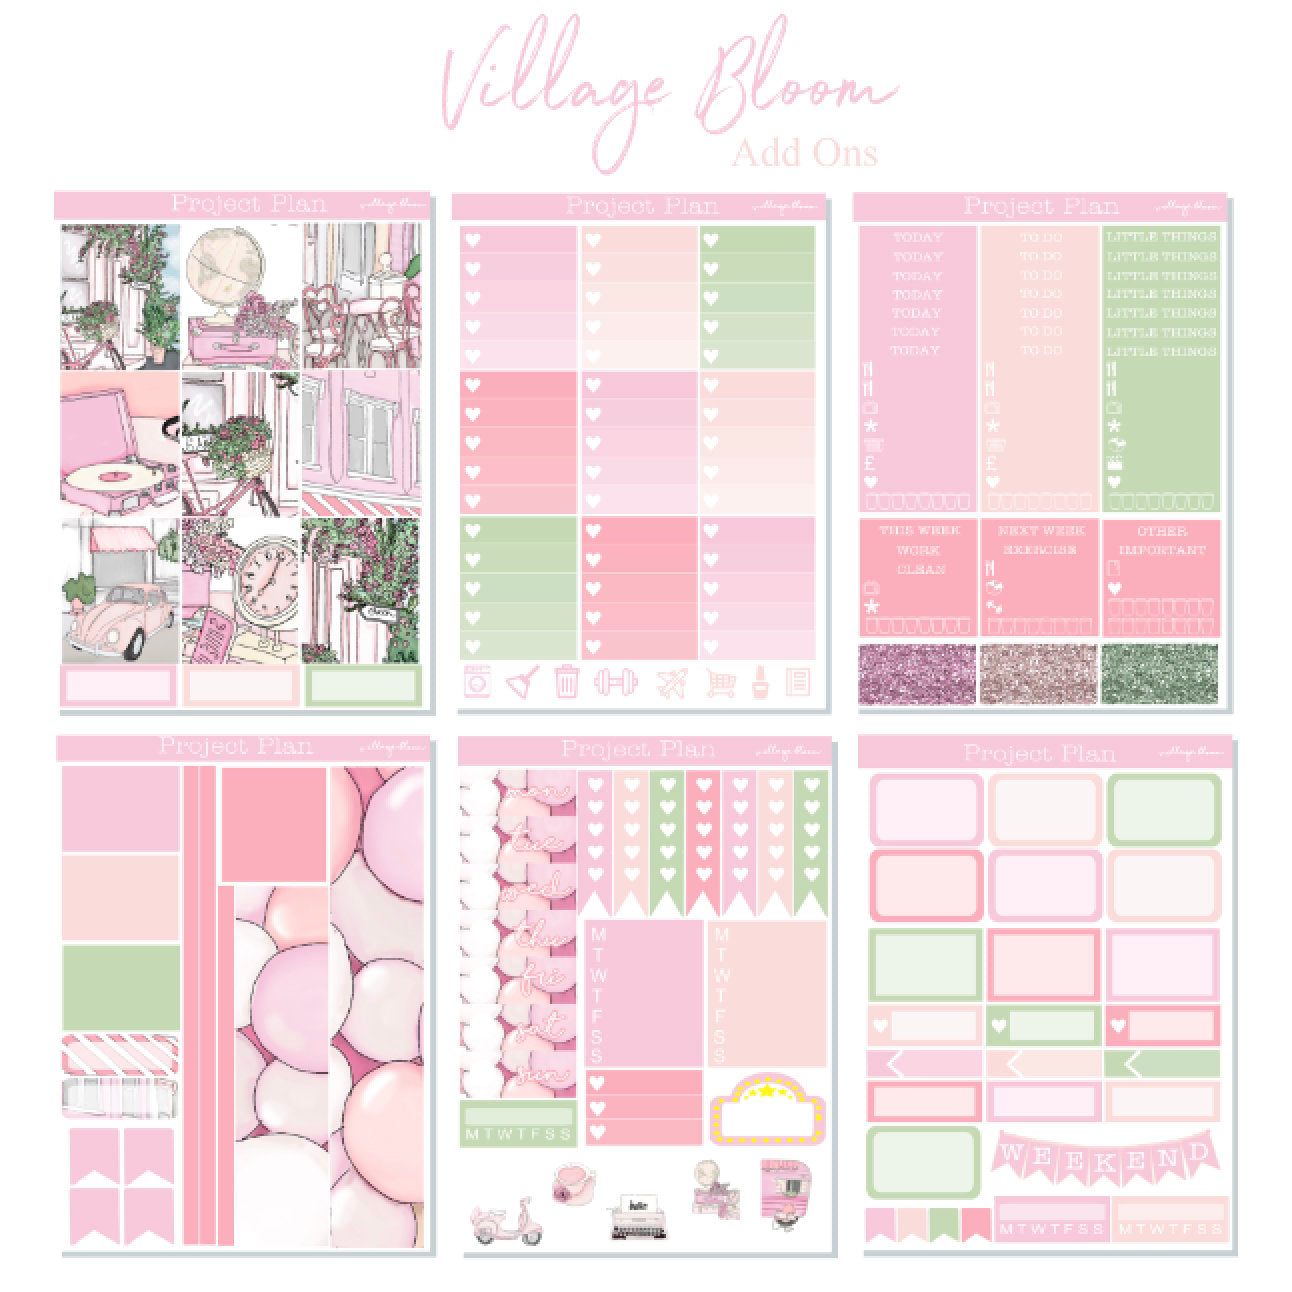 Village Bloom Full Kit